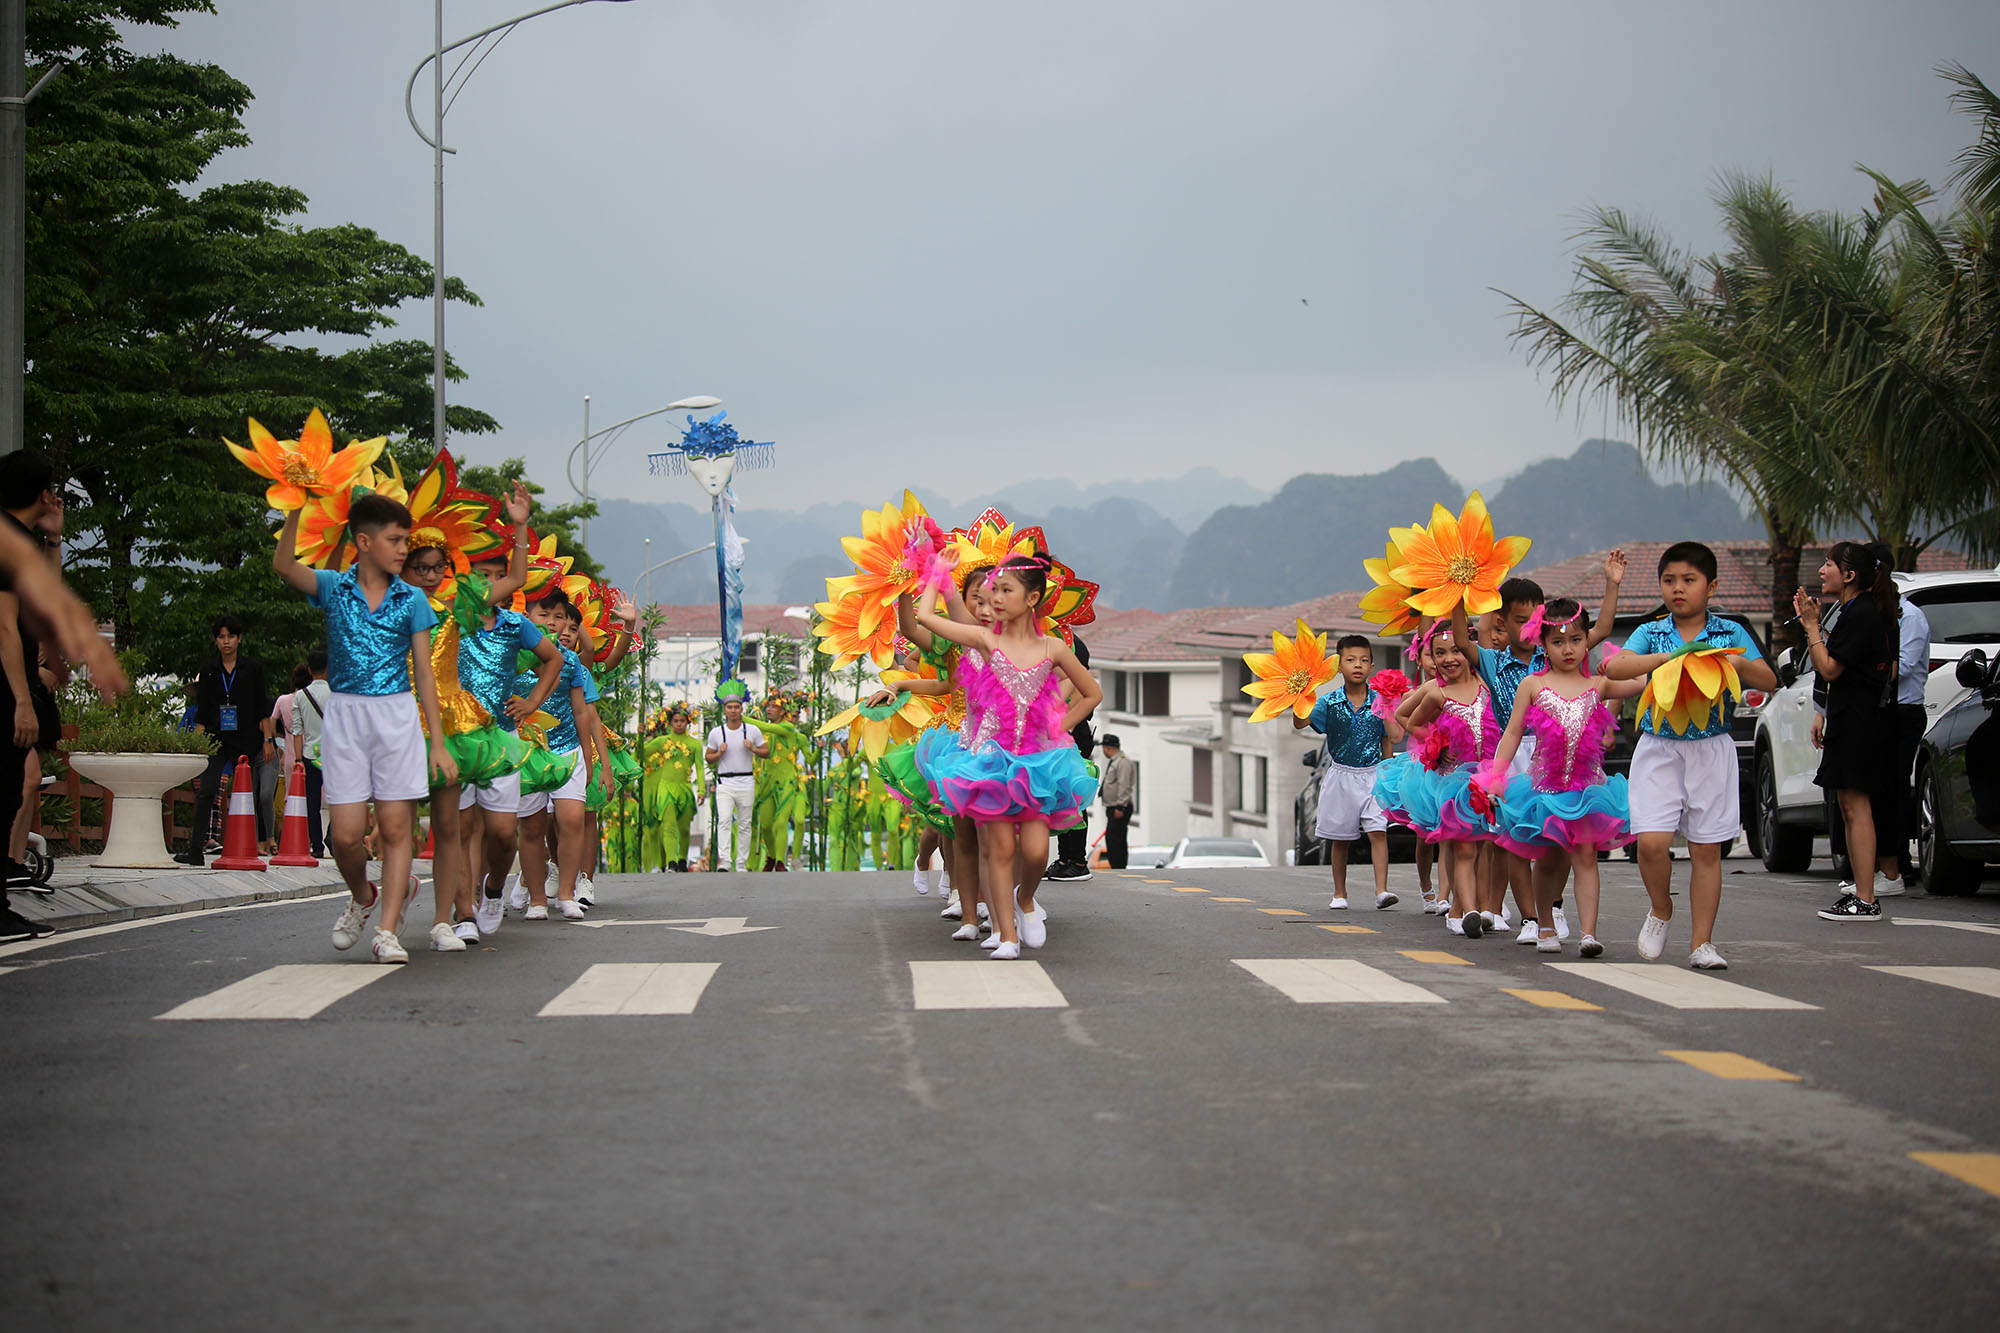 Trước đó là màn diễu hành mang màu sắc Carnaval với hơn 400 người tham dự.